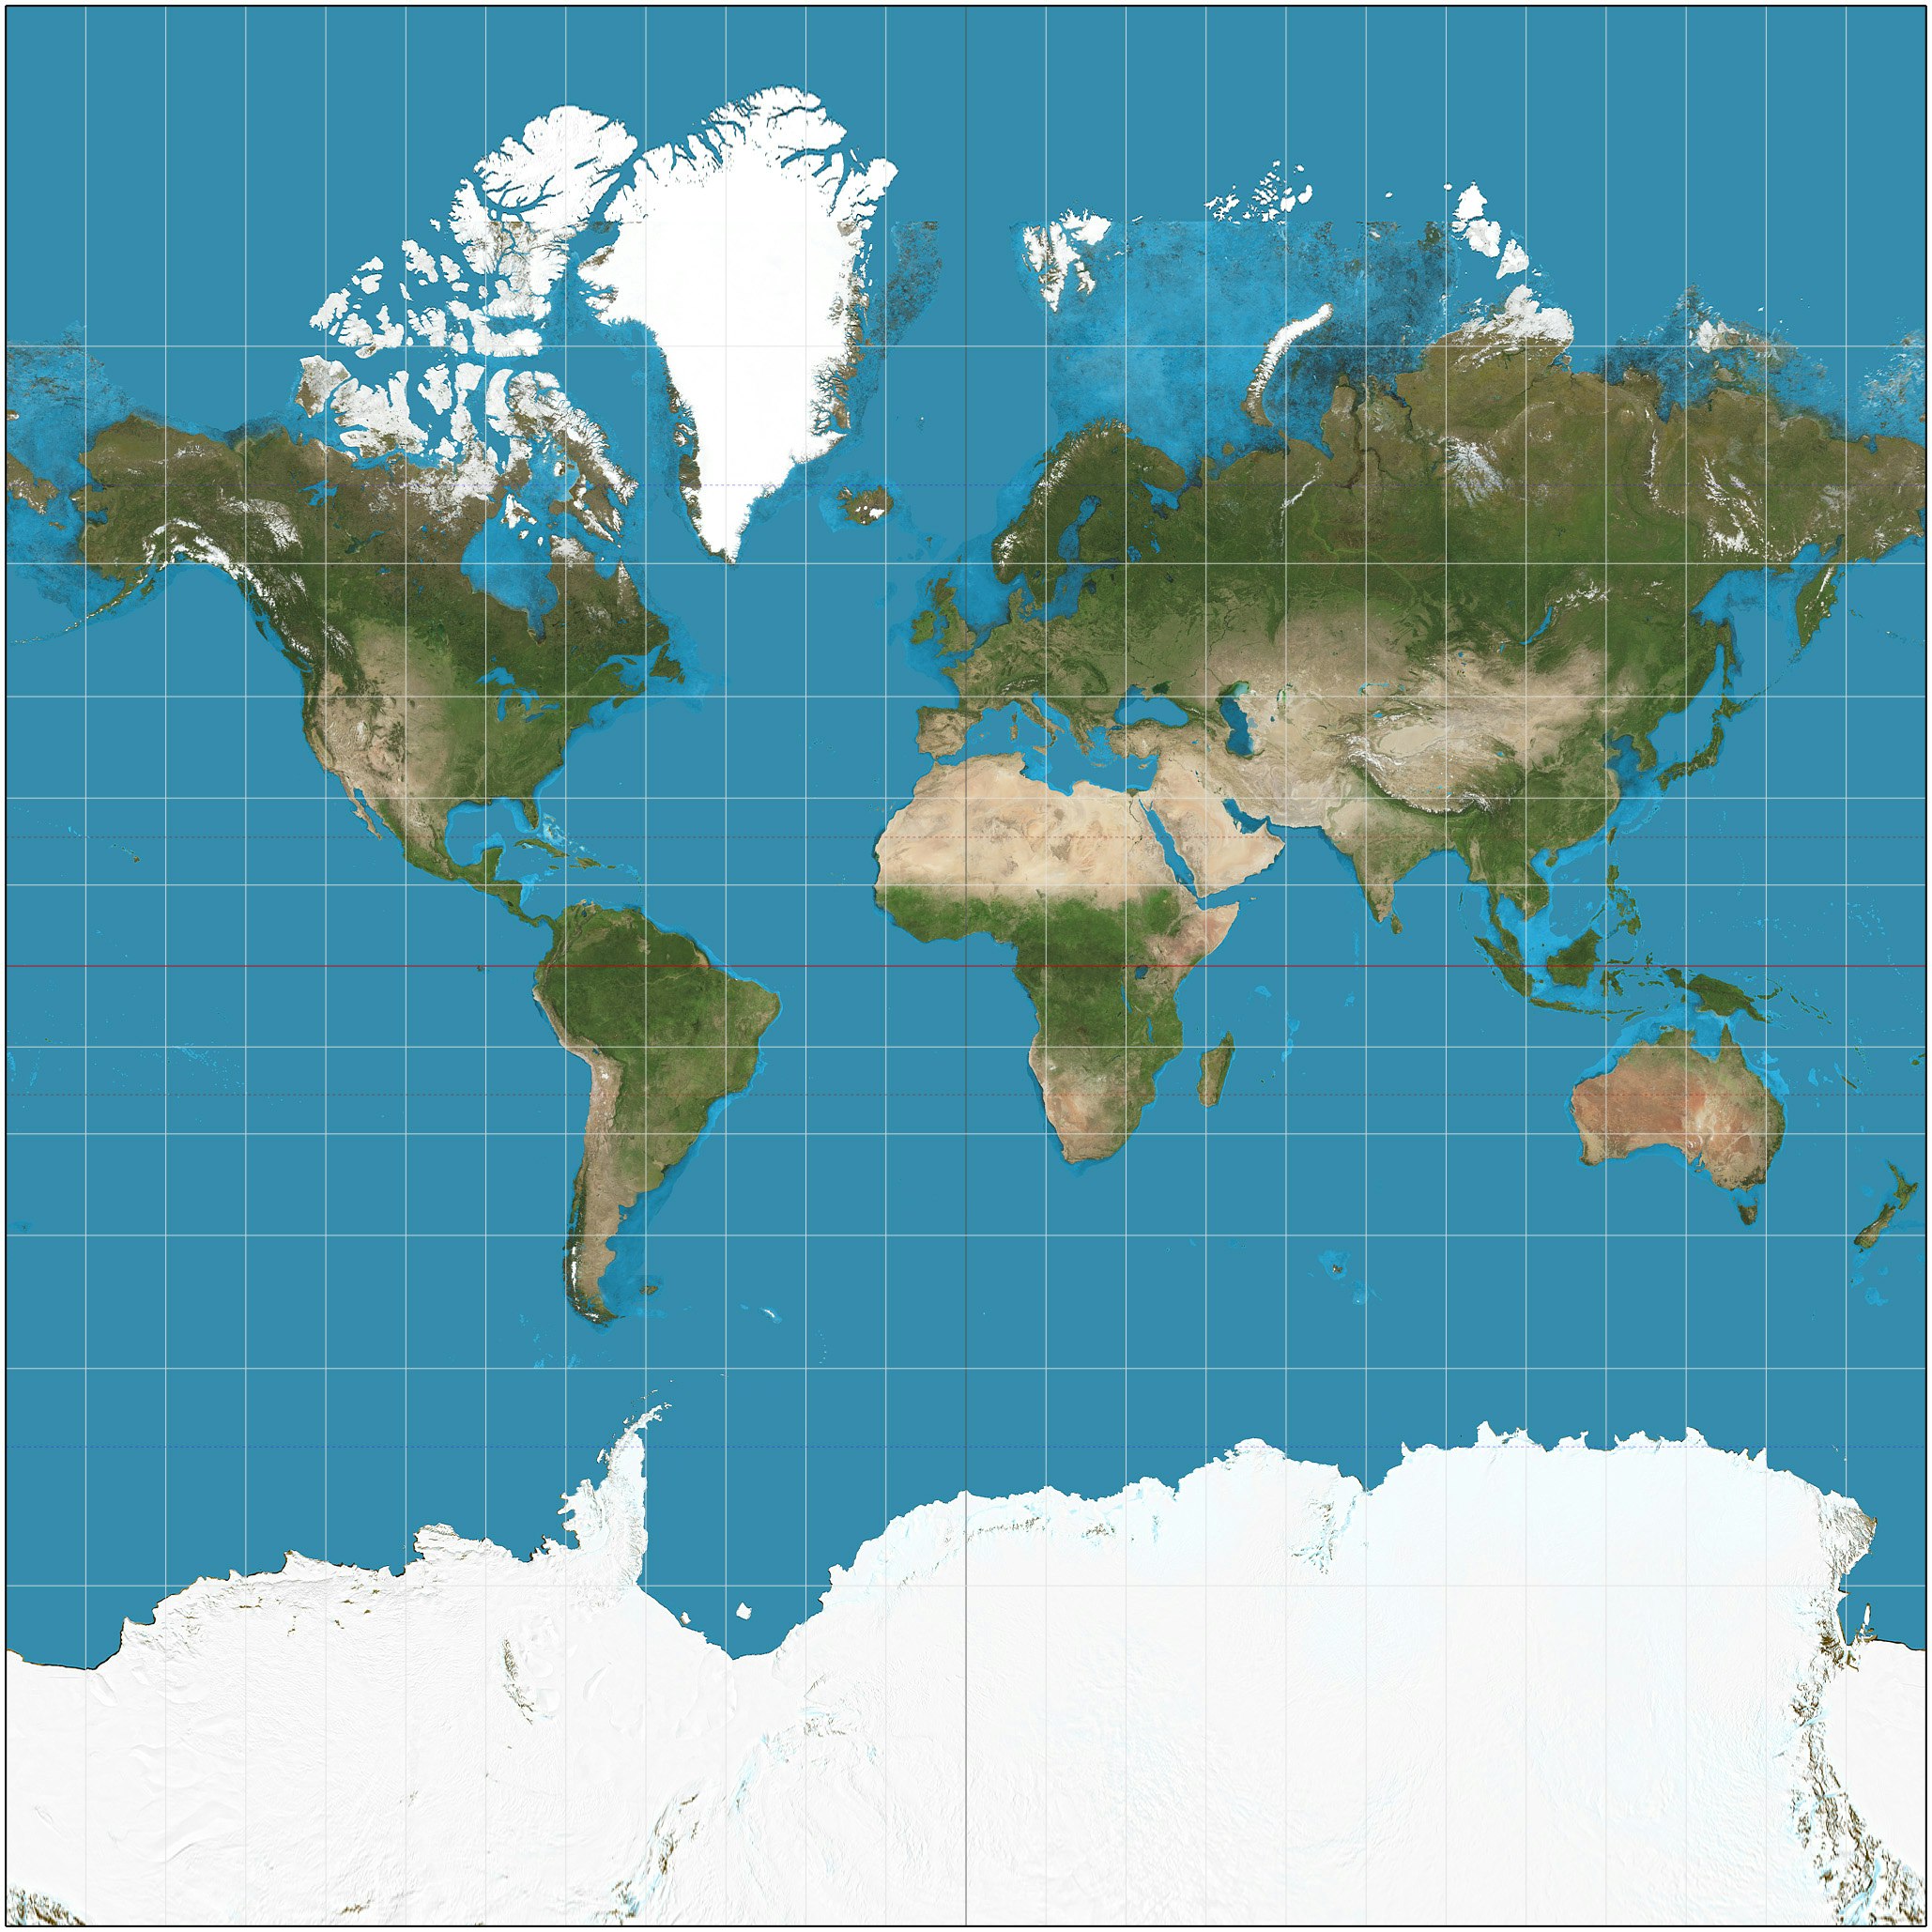 メルカトル図法での世界地図